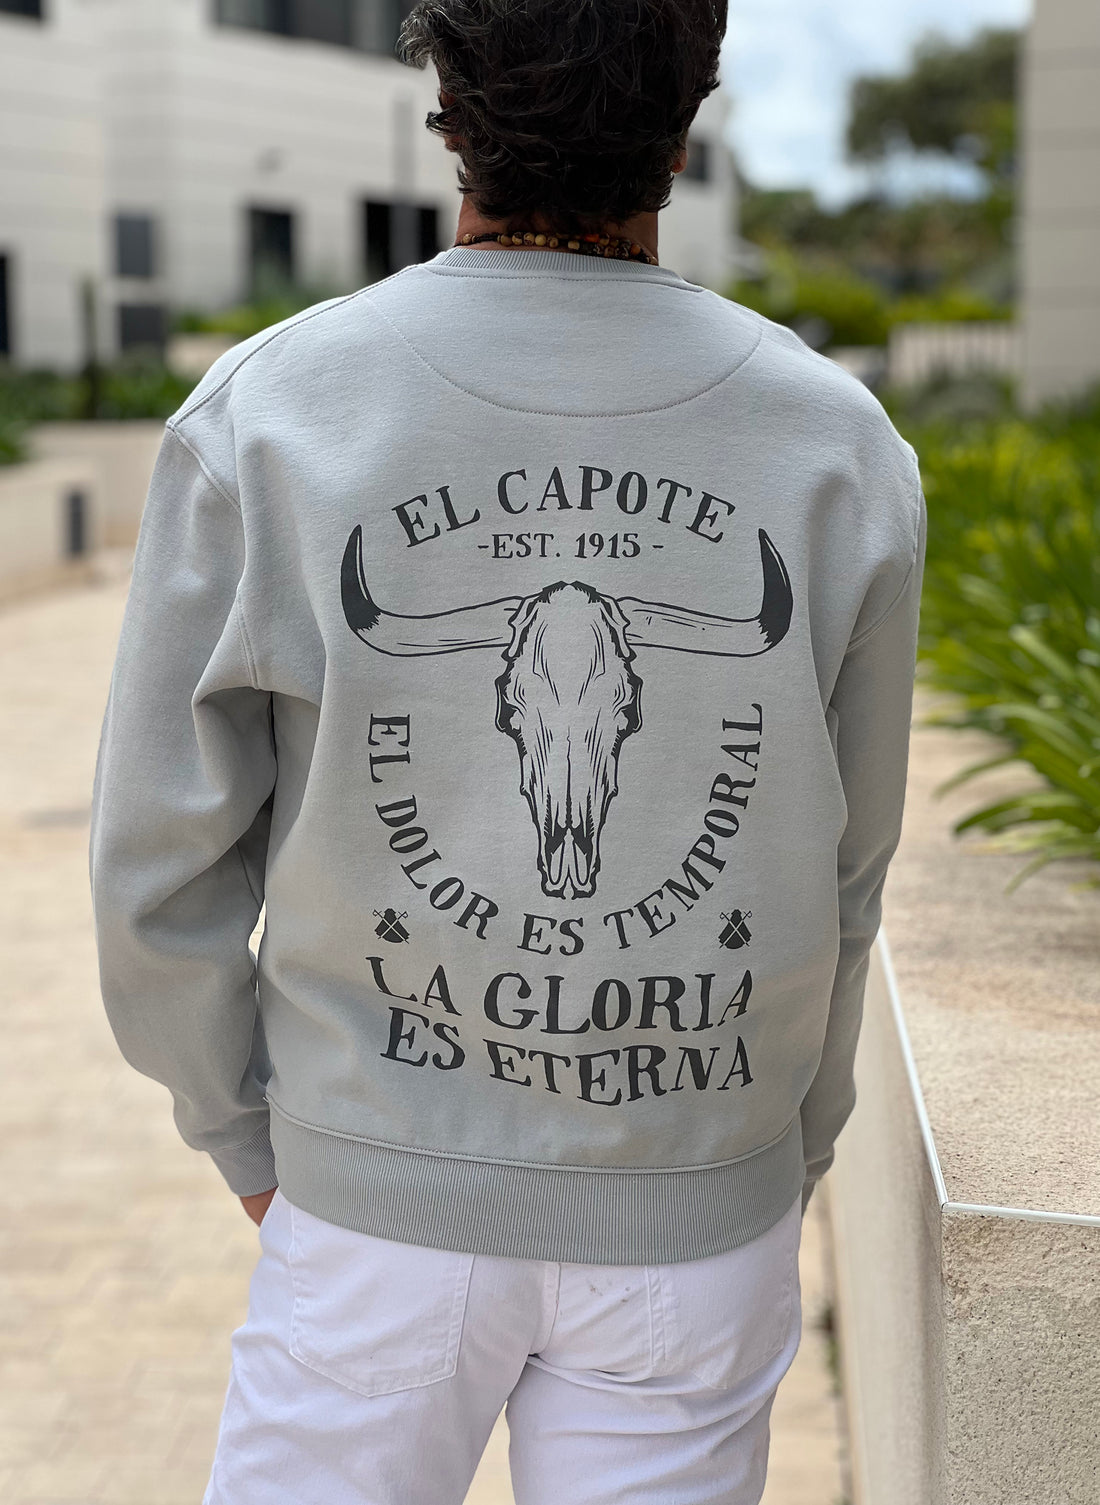 La Gloria Herren-Sweatshirt in Grau